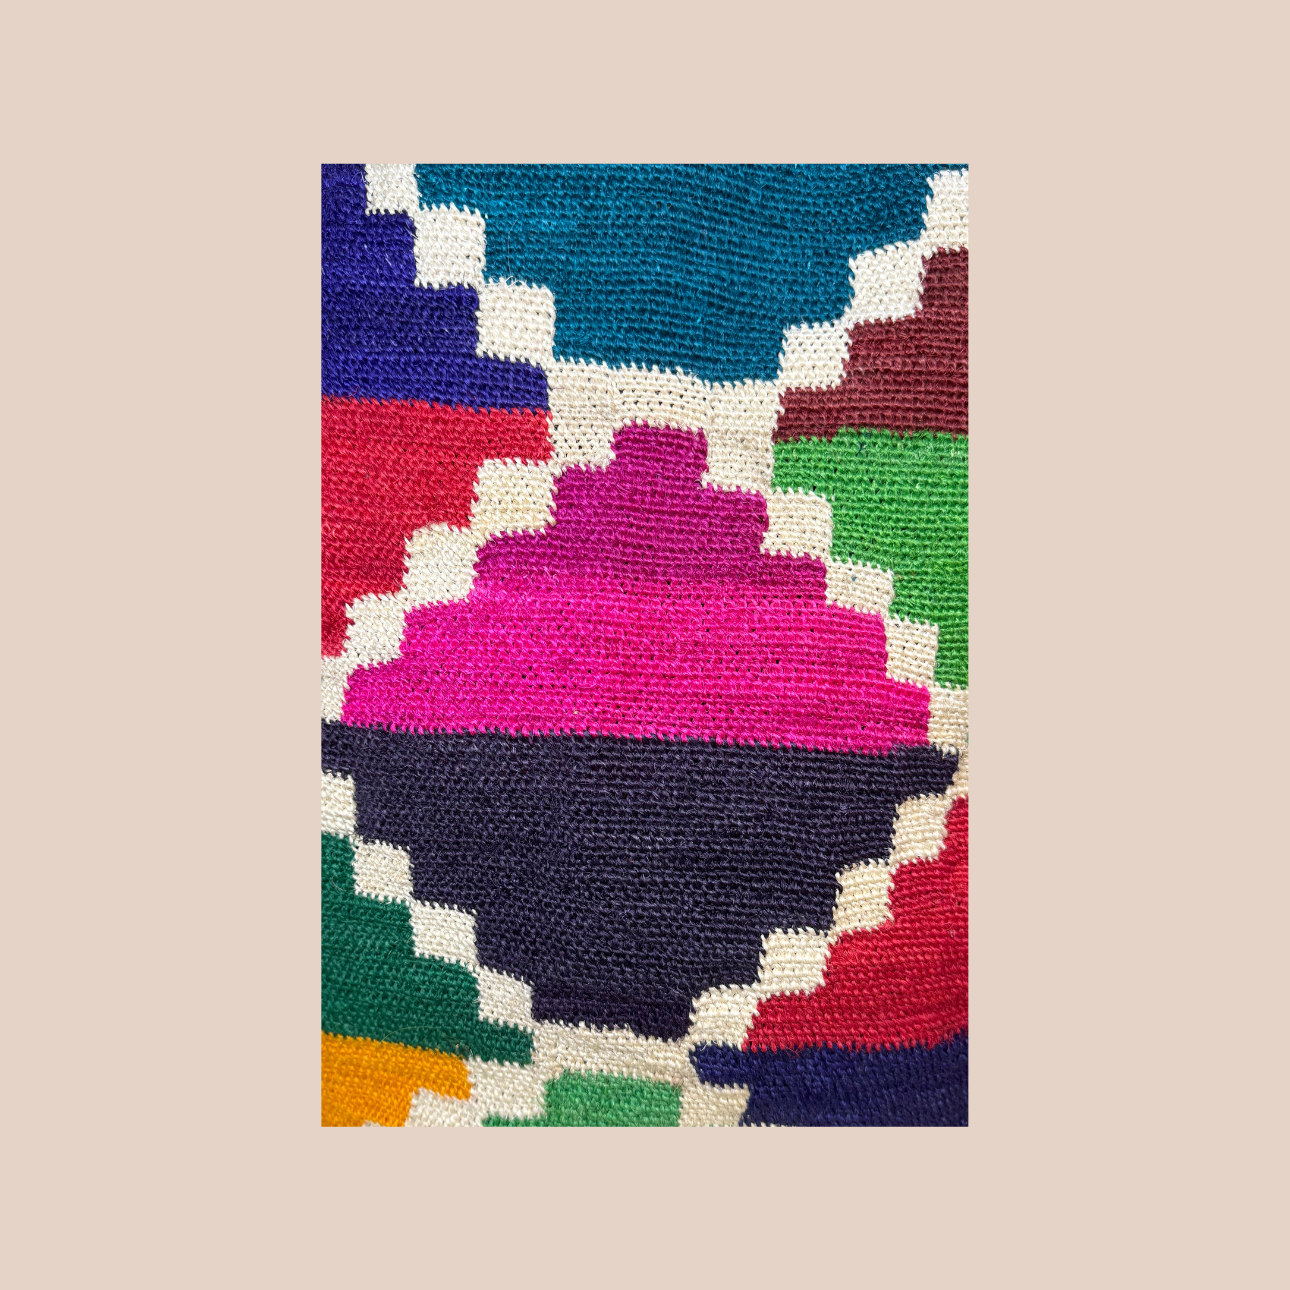 Image du sac Frida de Maison Badigo, sac en fibres naturelles de cactus multicolore unique et tendance